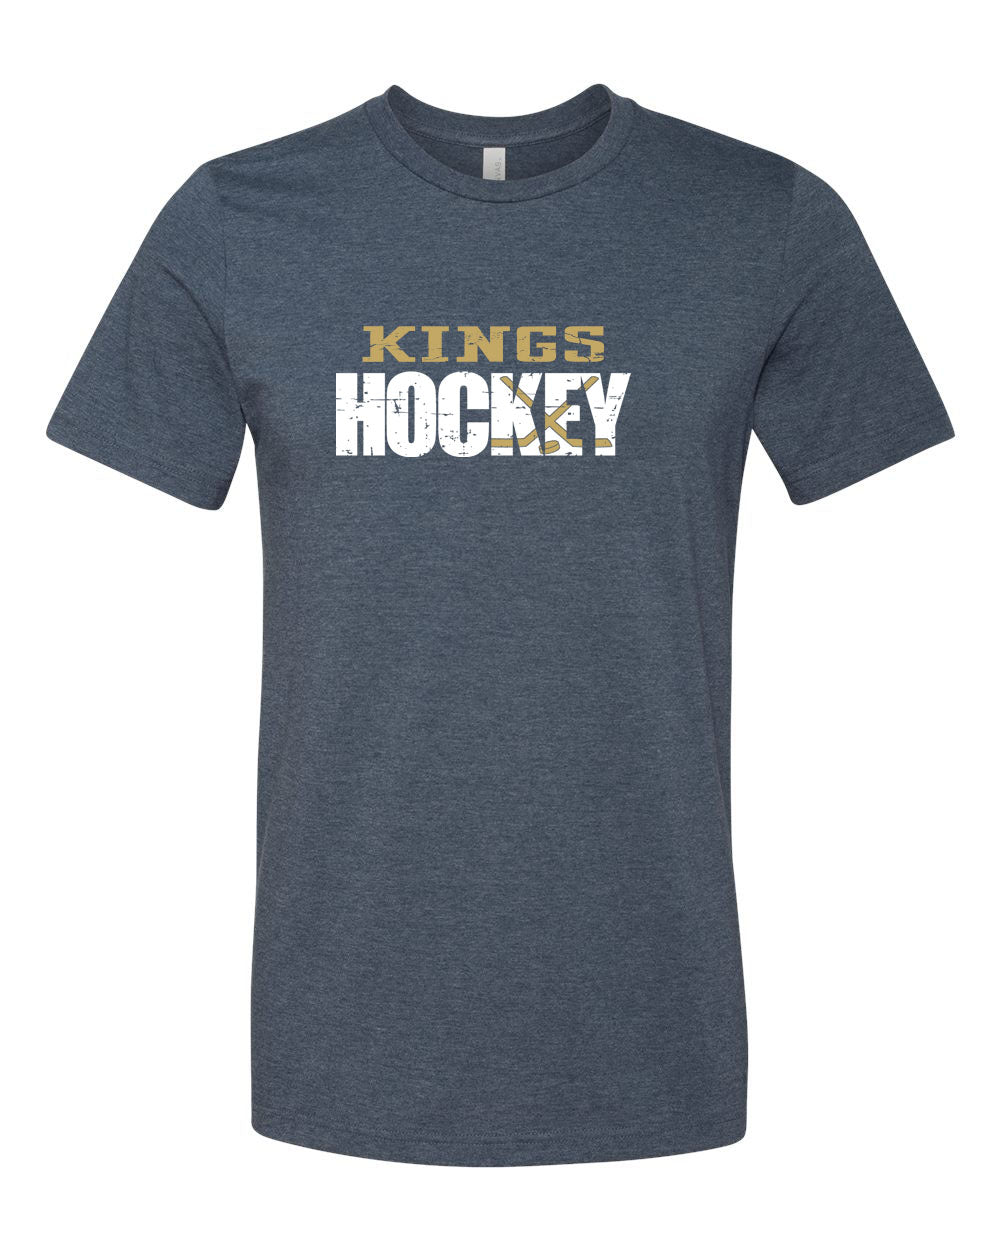 Kings Hockey Distressed T-Shirt